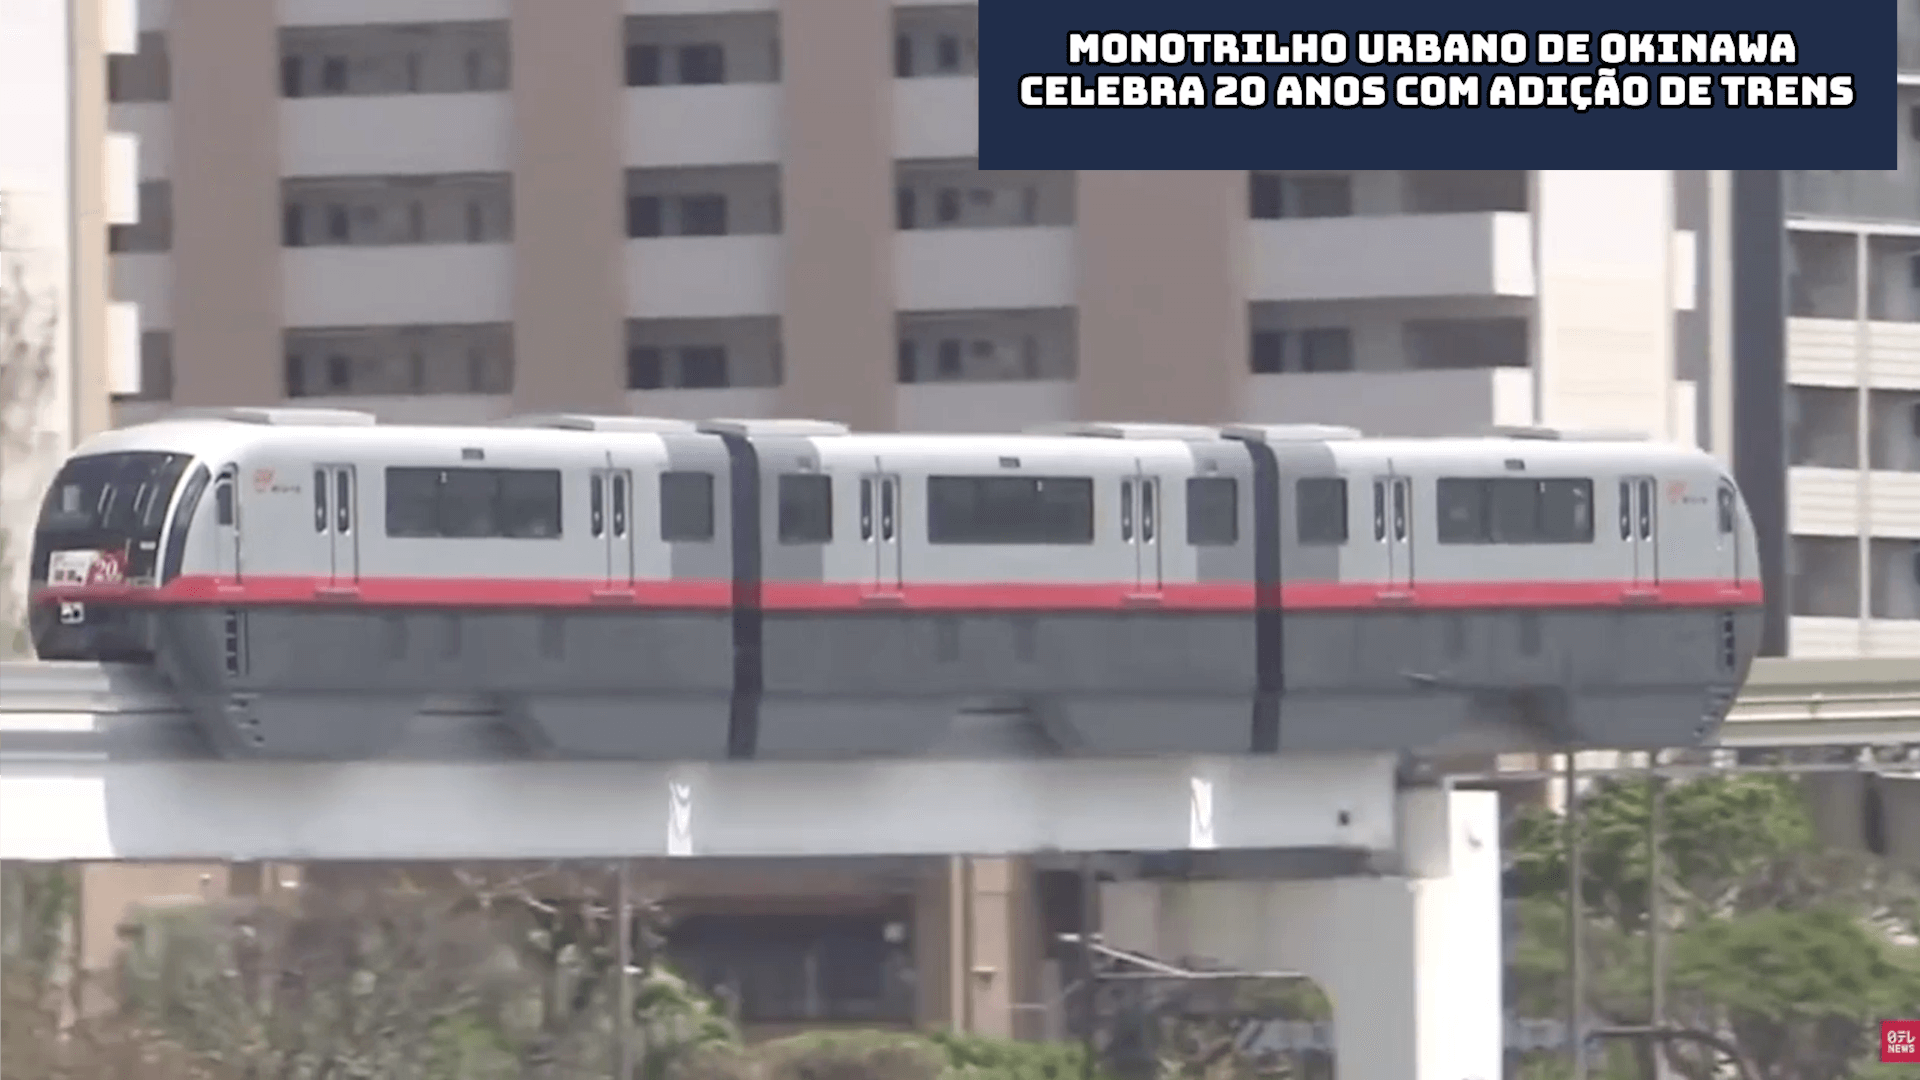 Monotrilho Urbano de Okinawa celebra 20 anos com adição de trens